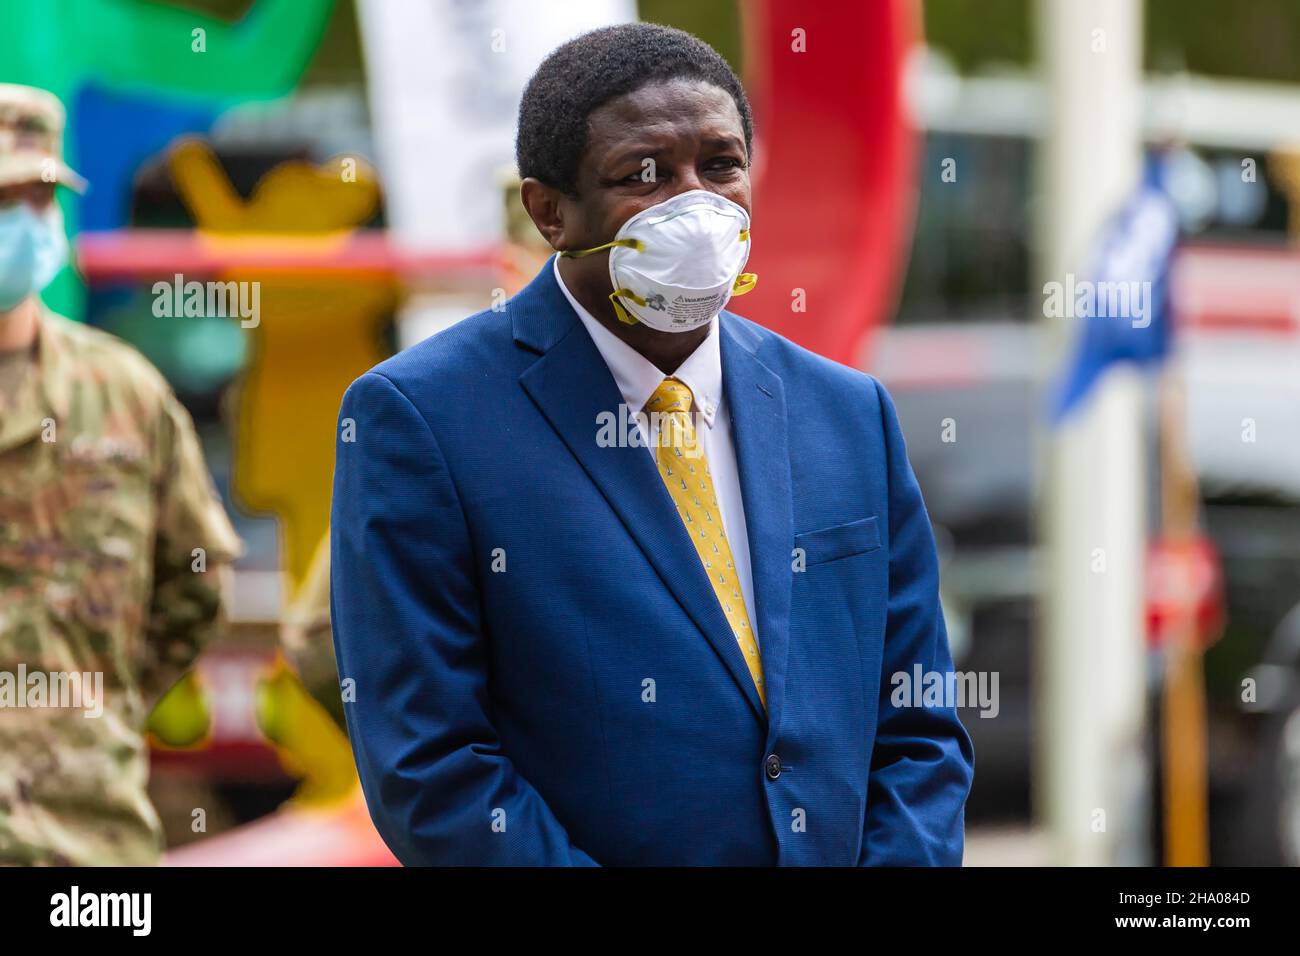 Gobernador de Florida Ron DeSantis en la máscara médica durante la pandemia COVID-19. Estado de emergencia de Florida. Crisis del coronavirus en EE.UU. Foto de stock